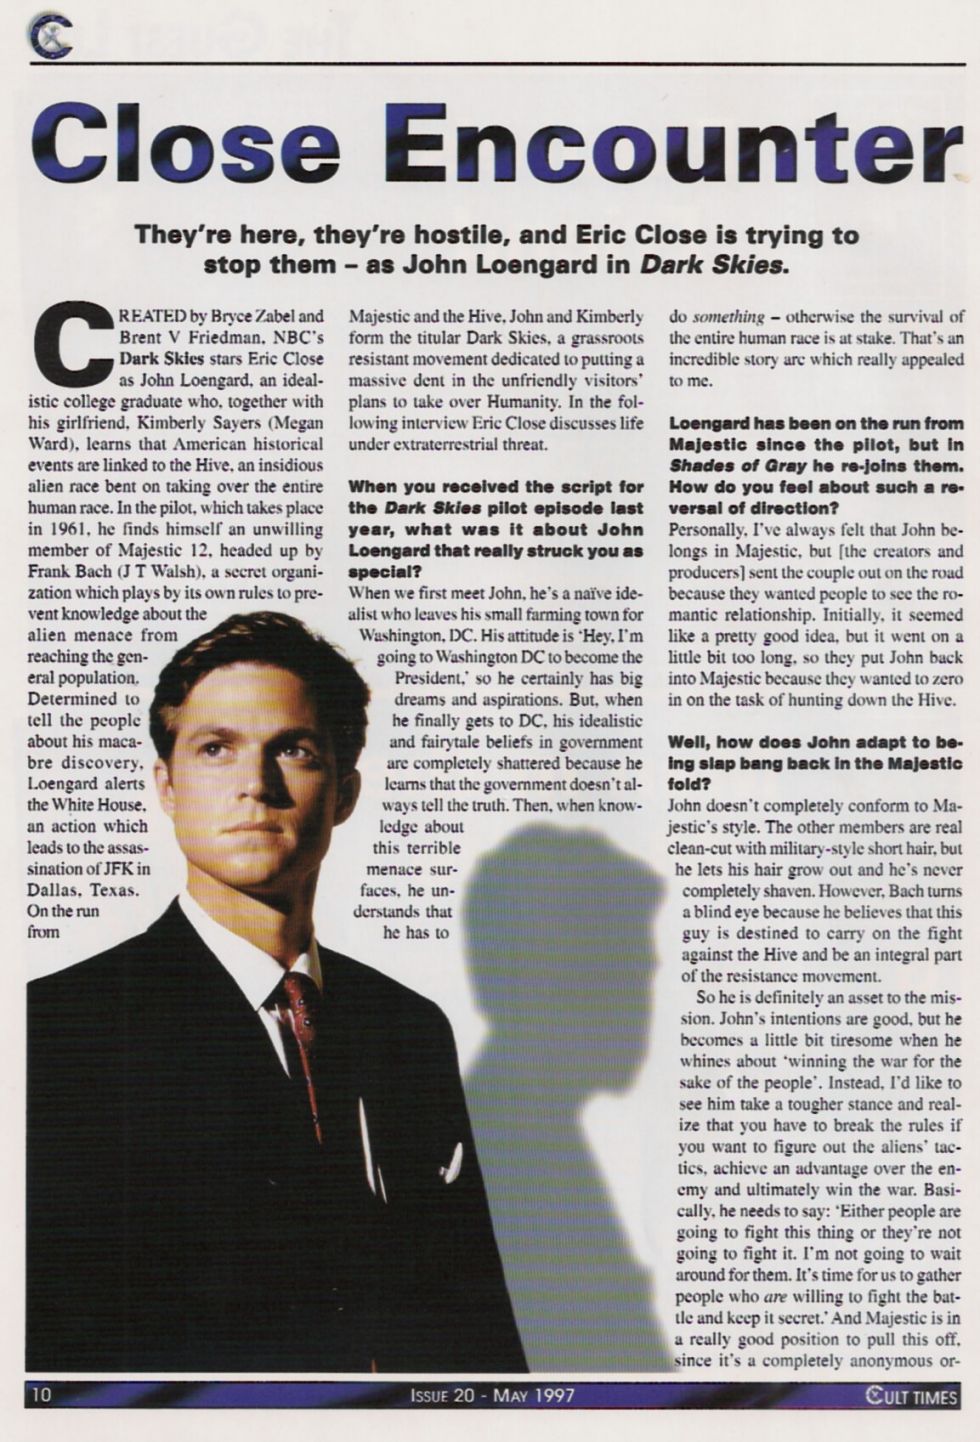 Cult Times #20 - May 1997 - Page 4
Keywords: ;dark_skies_media